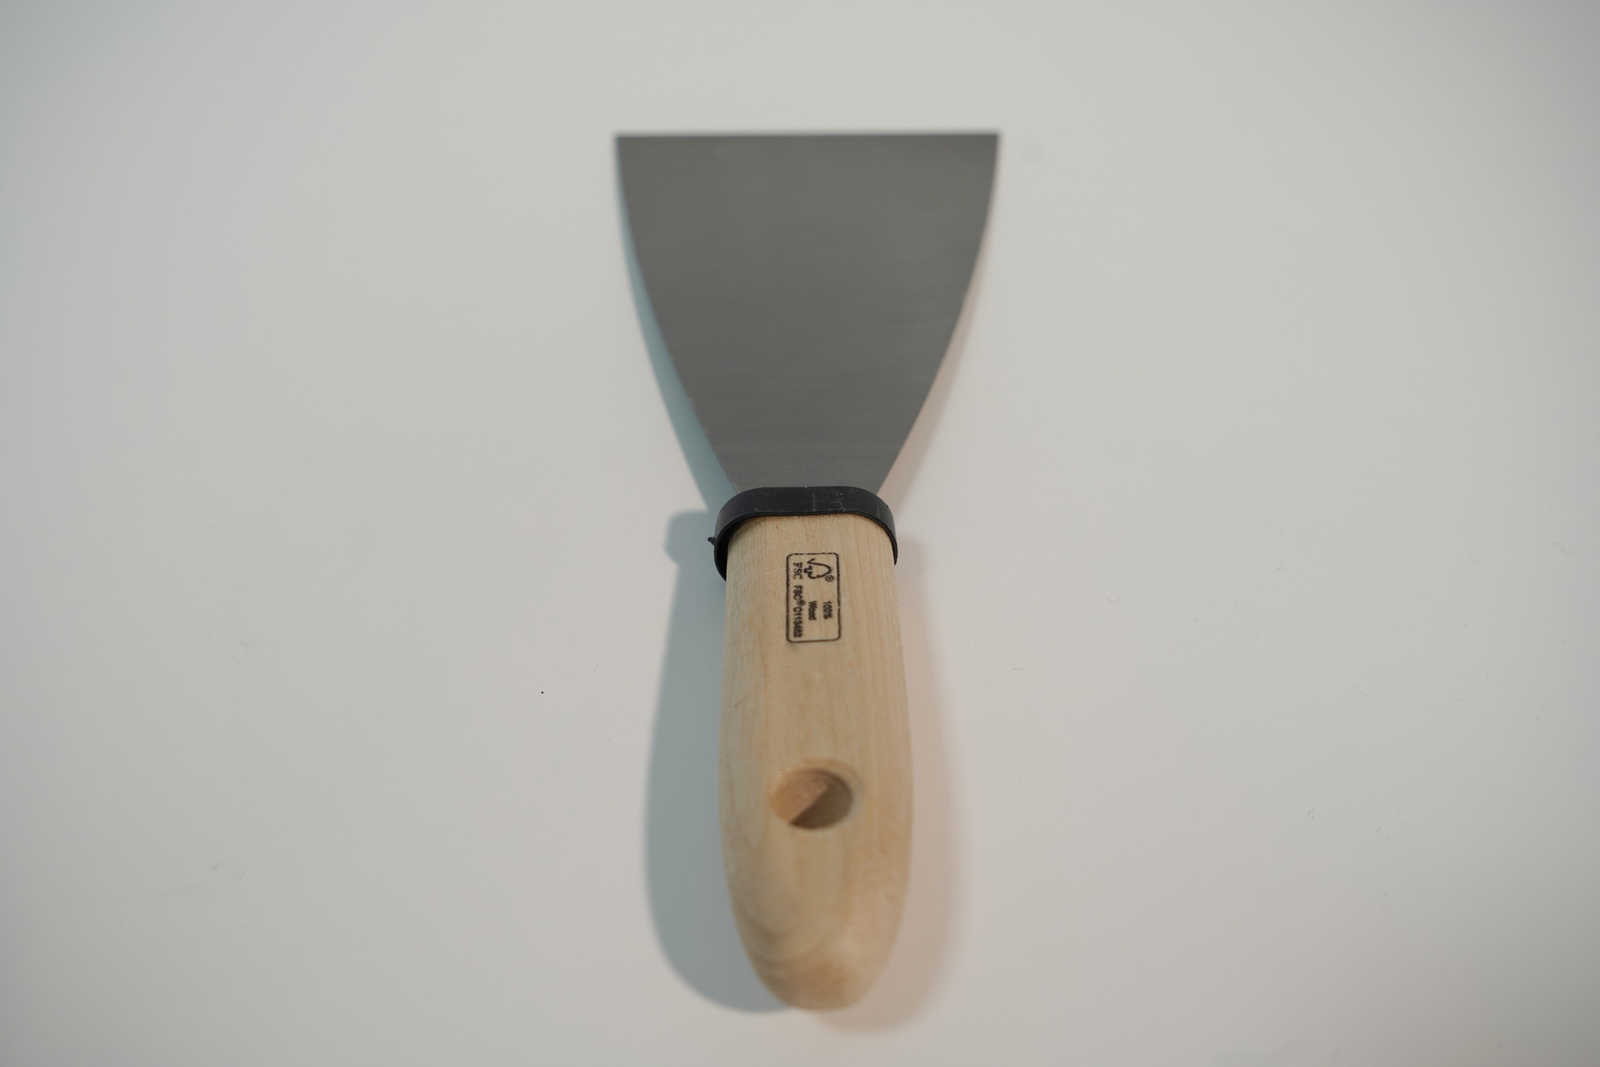             Espátula de pintor de 80 mm con hoja de acero flexible y mango de madera
        